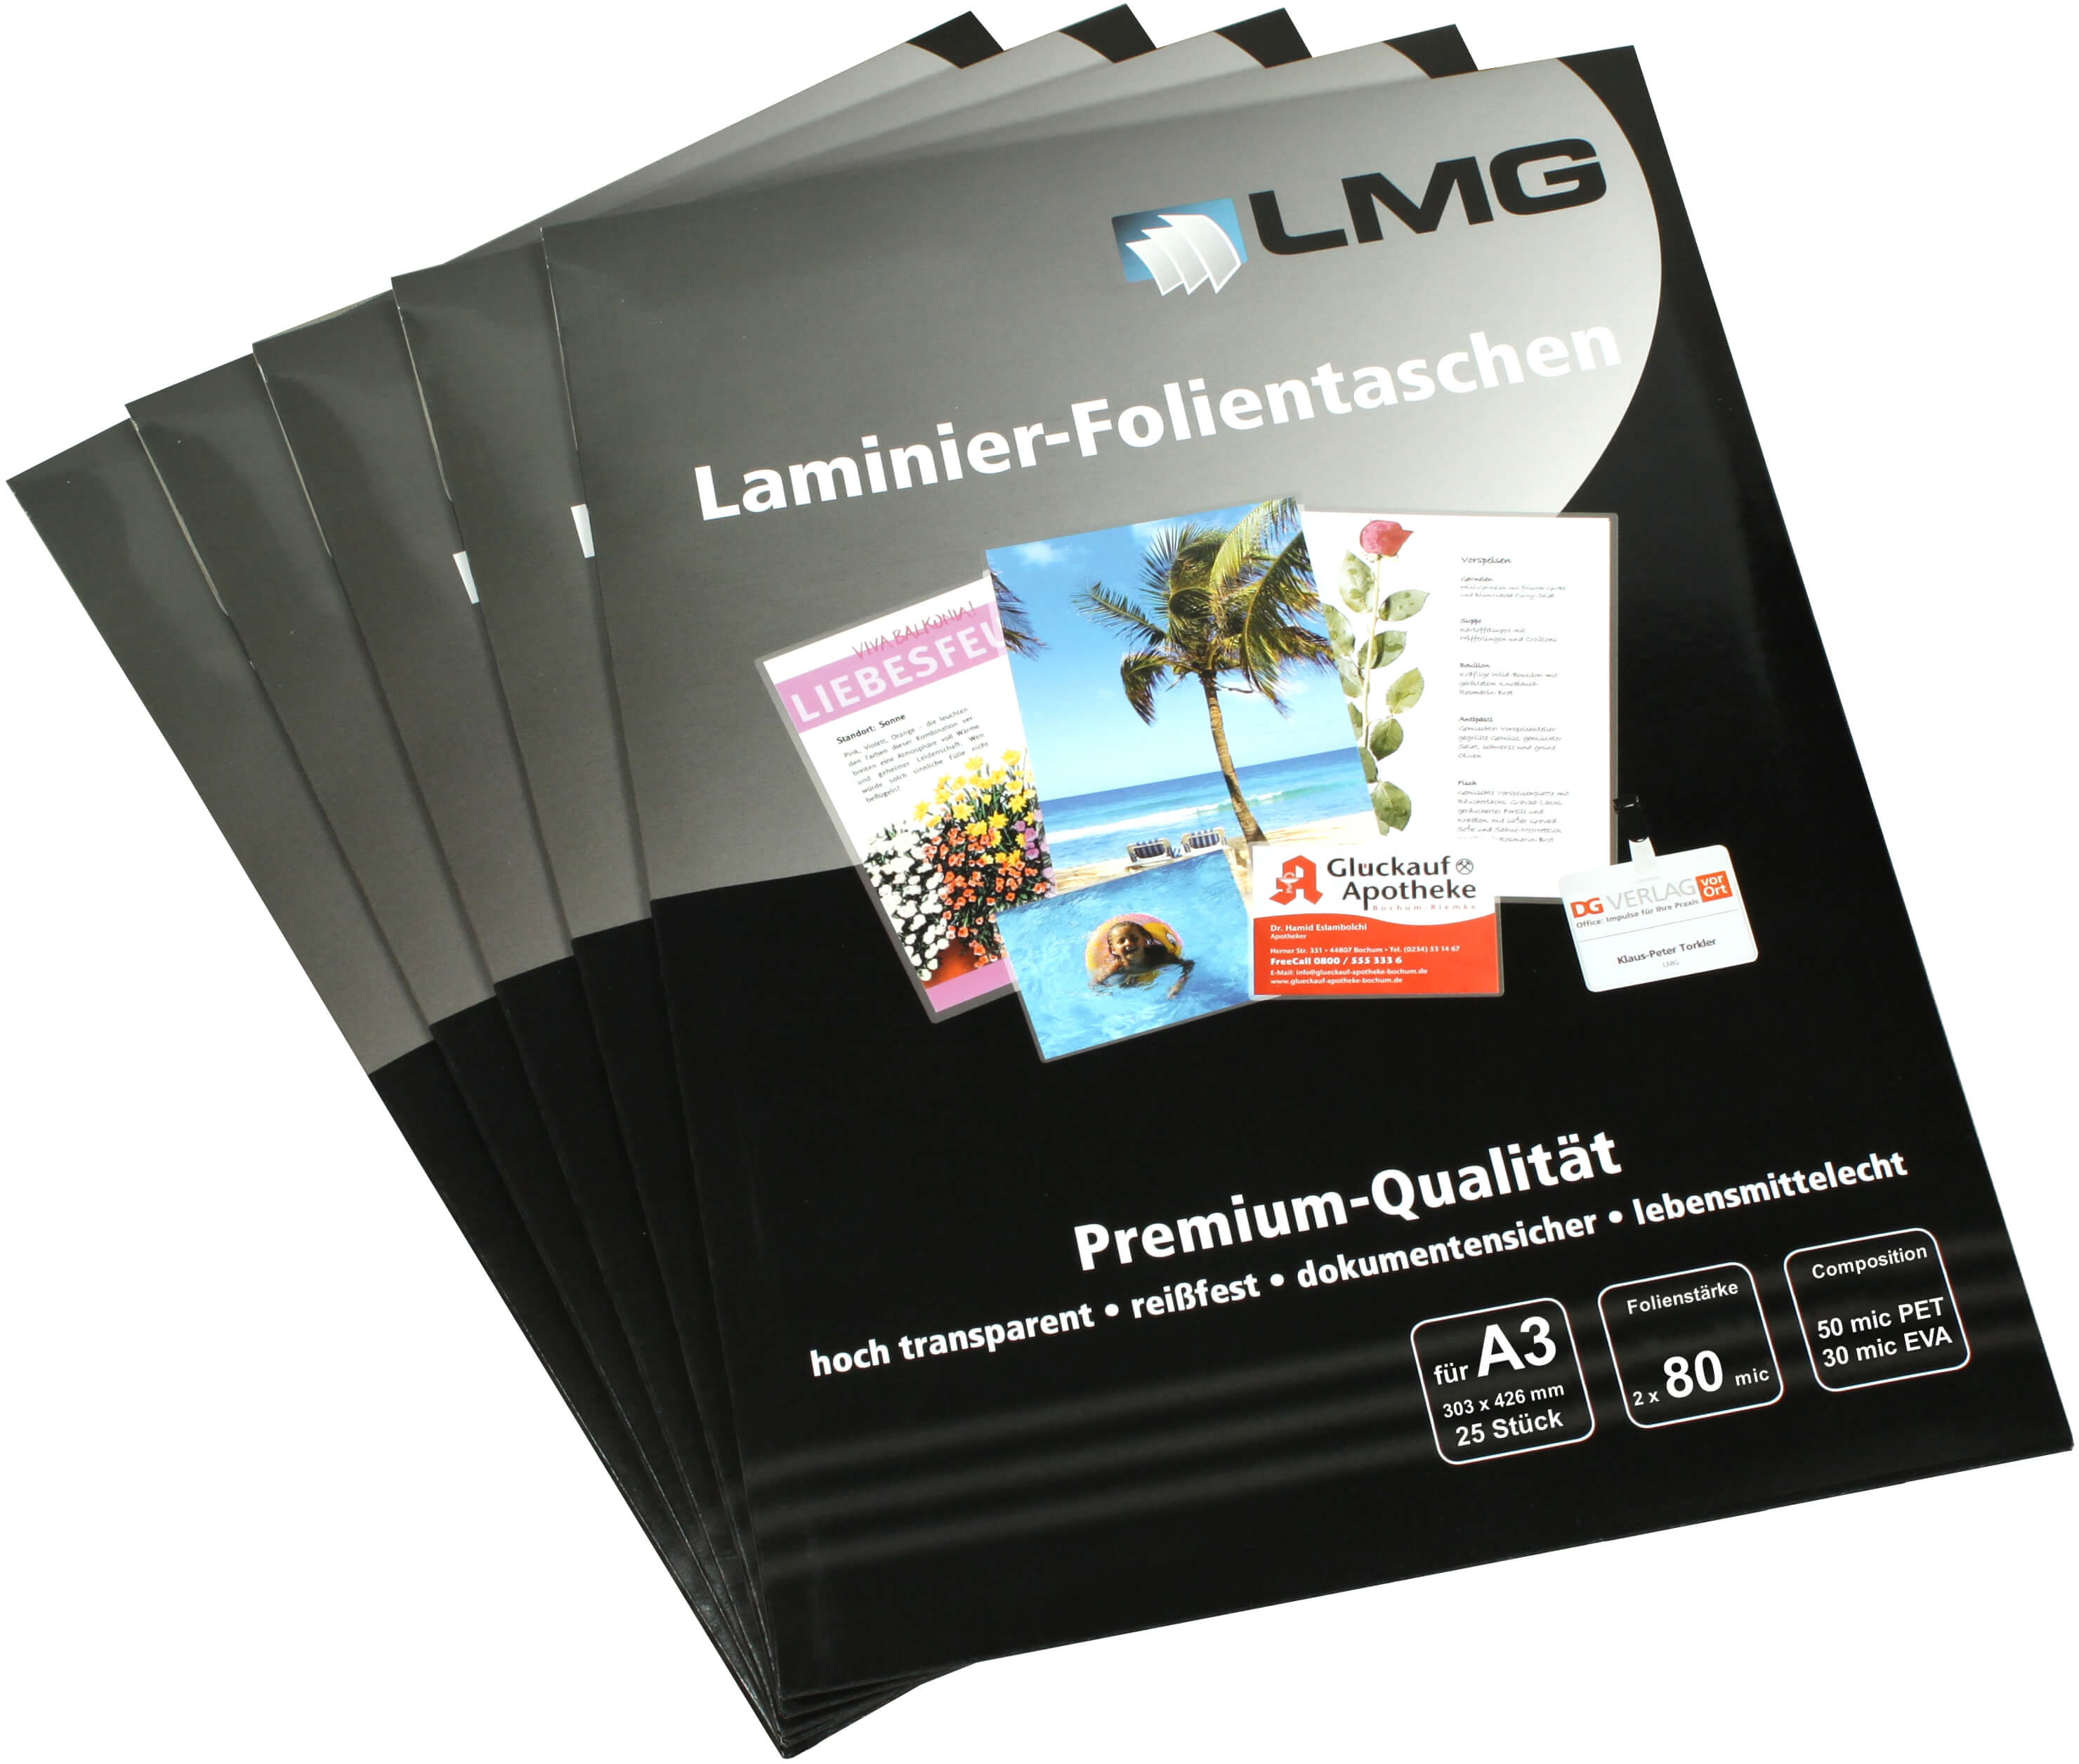 Laminierfolien A3 (303 x 426 mm), 2x 80 mic, glänzend | Bestnr. LMGA3-80-25